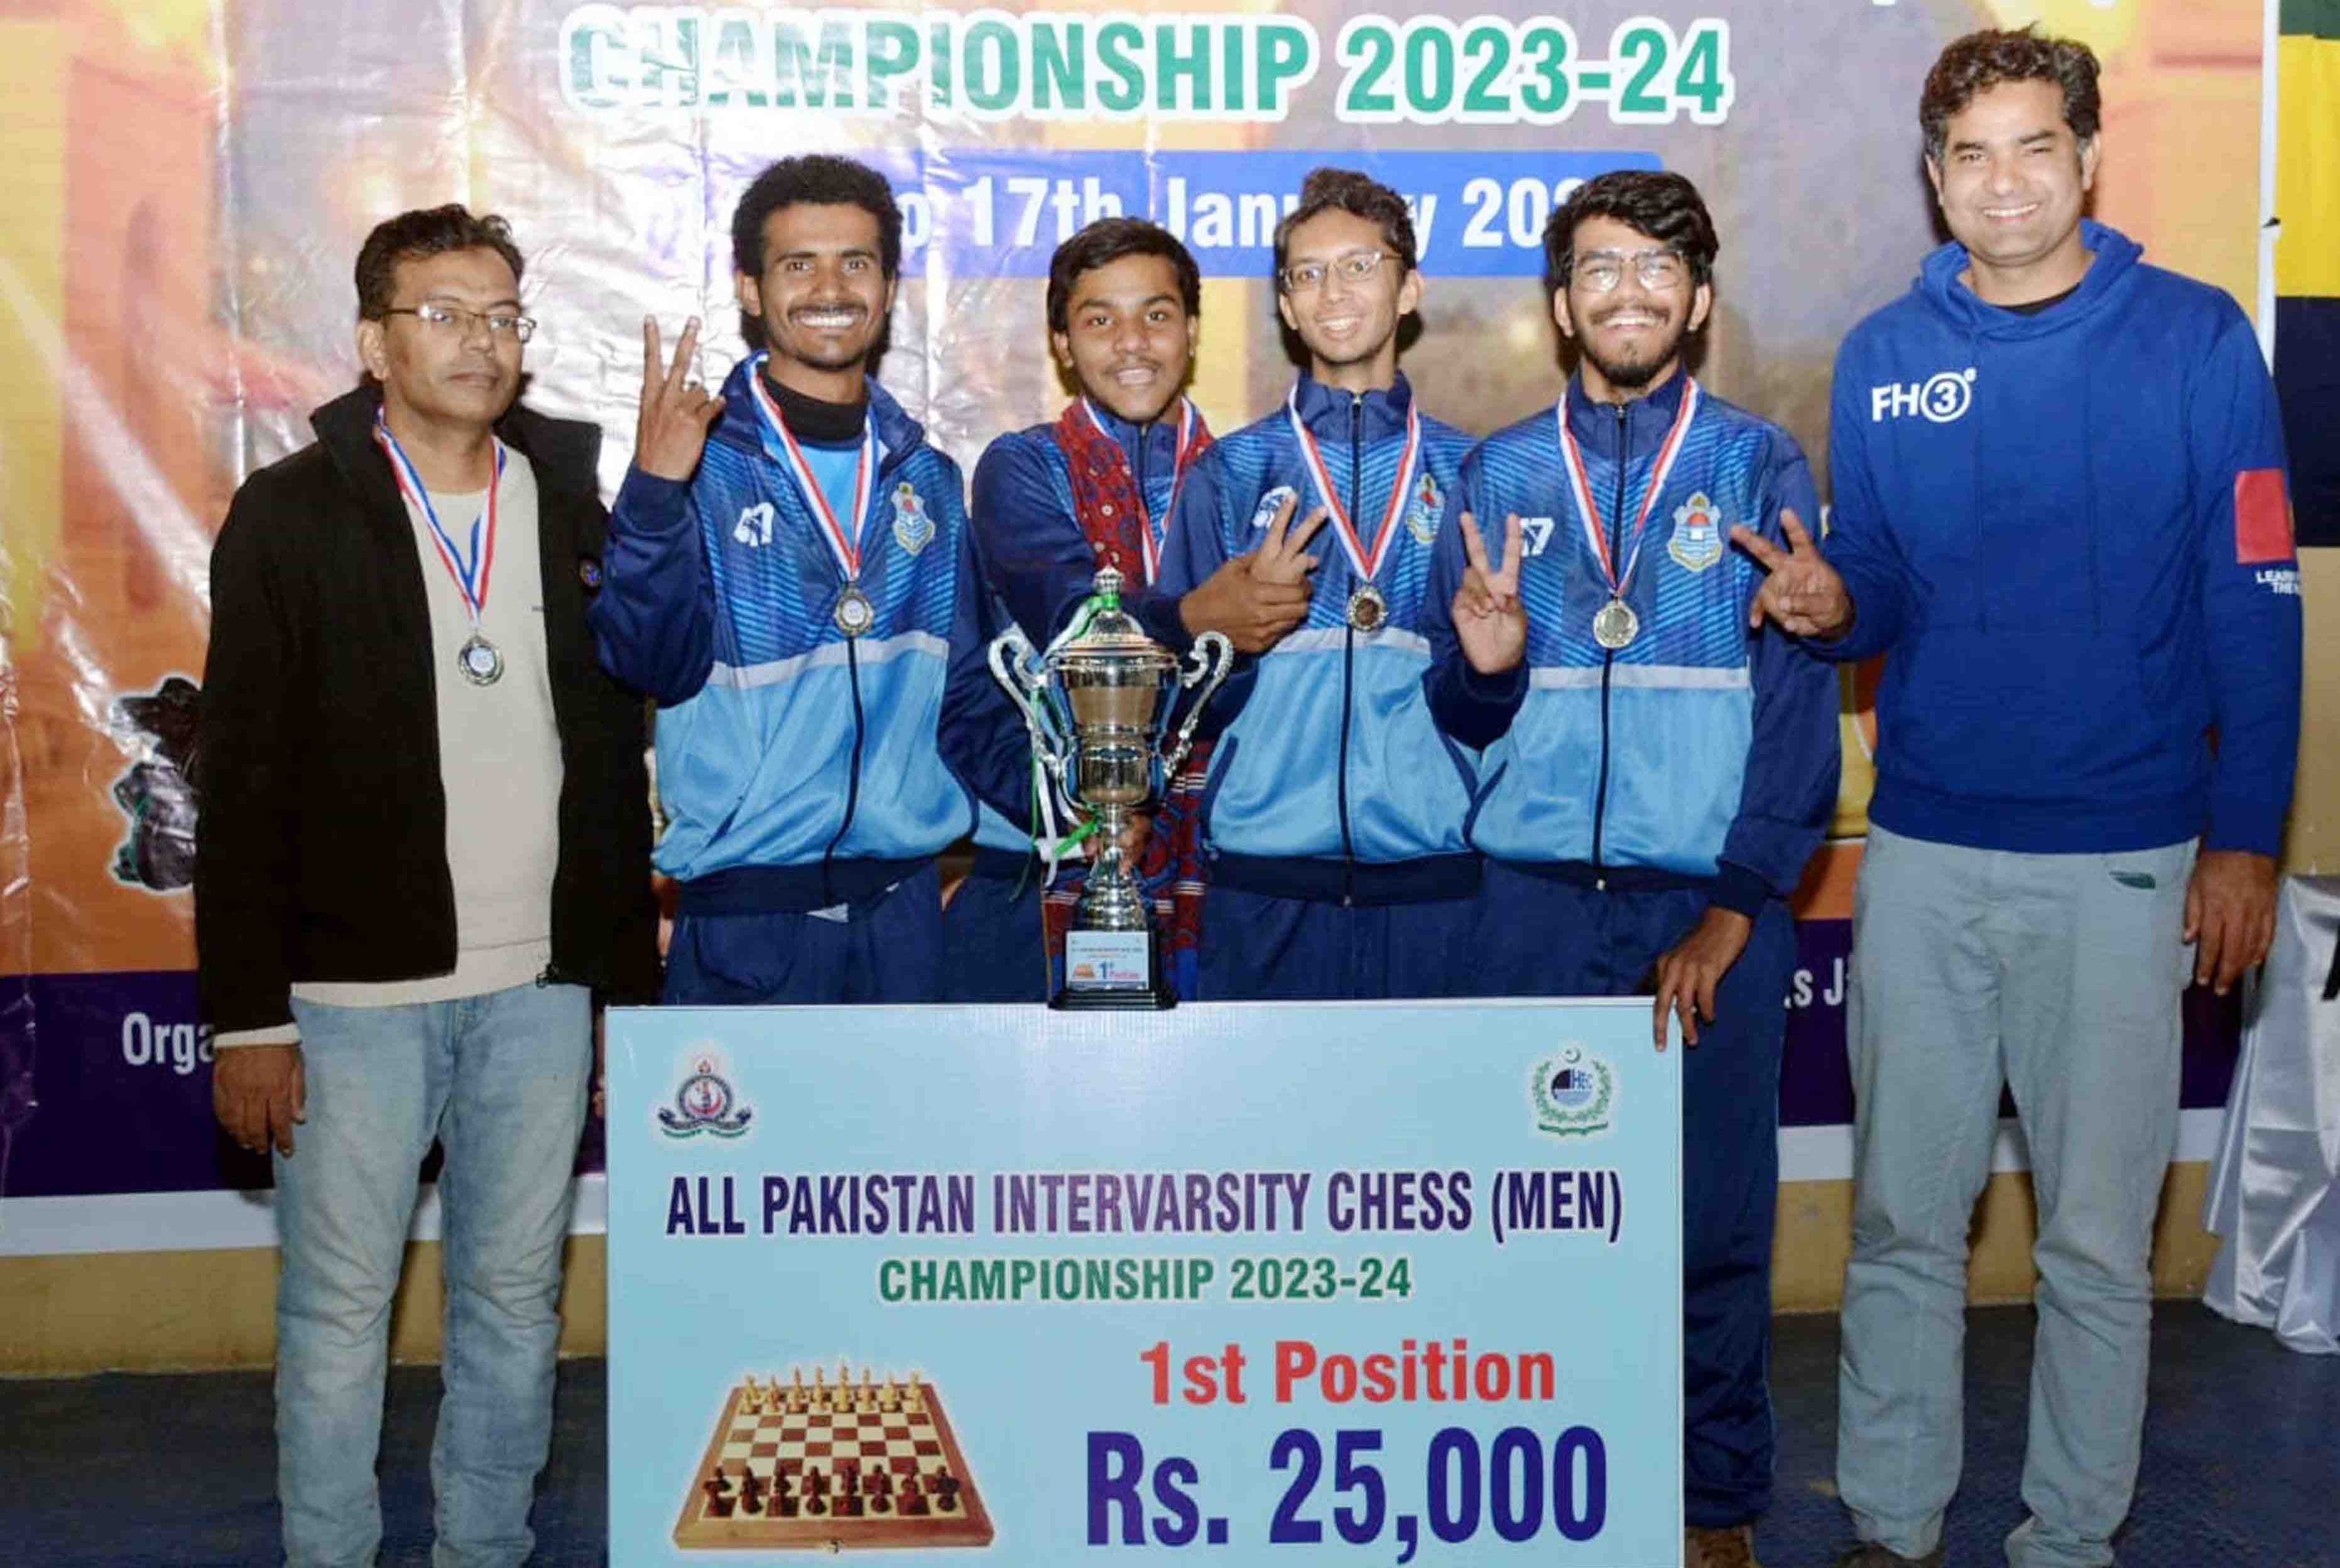 Punjab University players win Inter-Universities Chess Championship